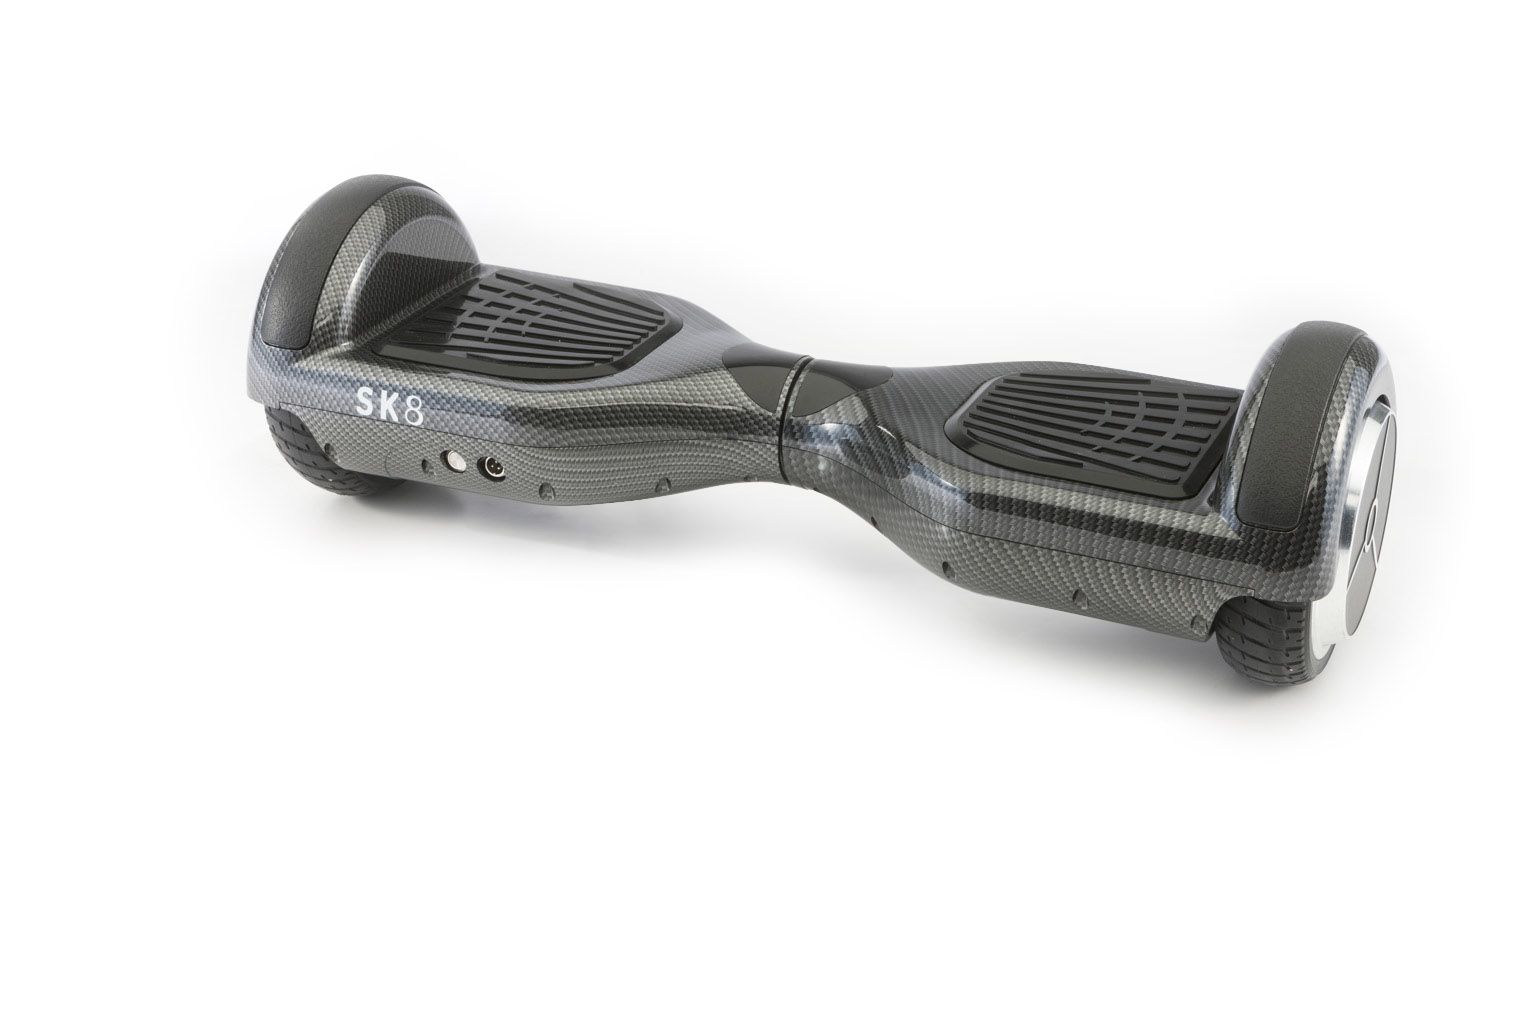 Comprar Hoverboard Sk8 Go Fibra Carbono